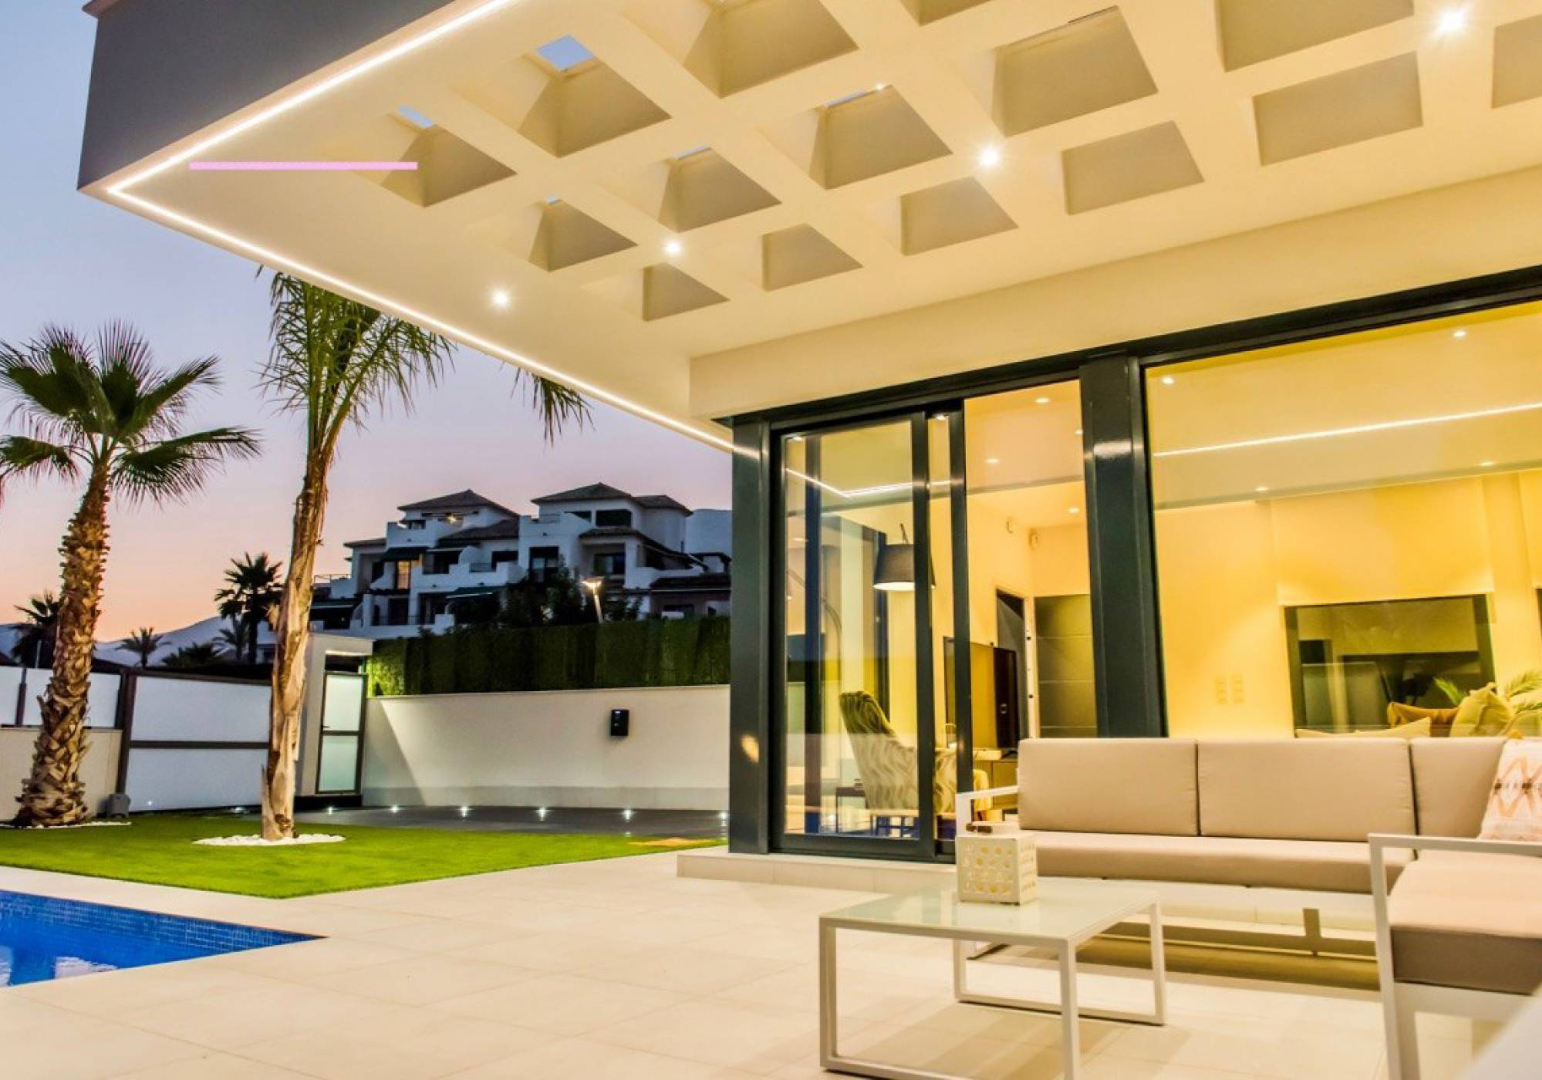 Moderne, luxe villa's met een grandioos uitzicht!